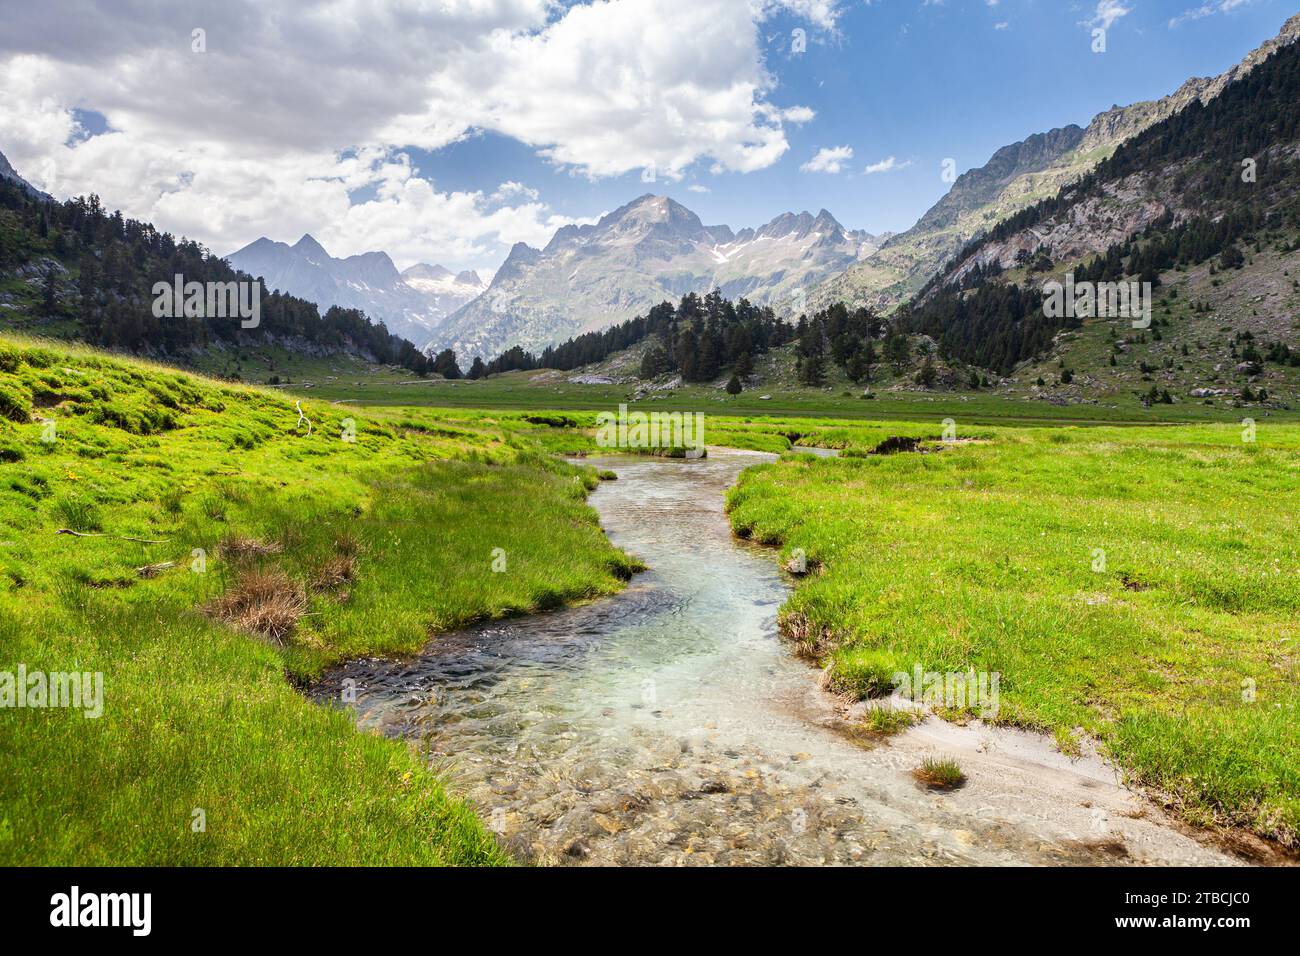 Plan d'Estan, Benasque valley, Natural Park Posets Maladeta, Huesca, Spain Stock Photo